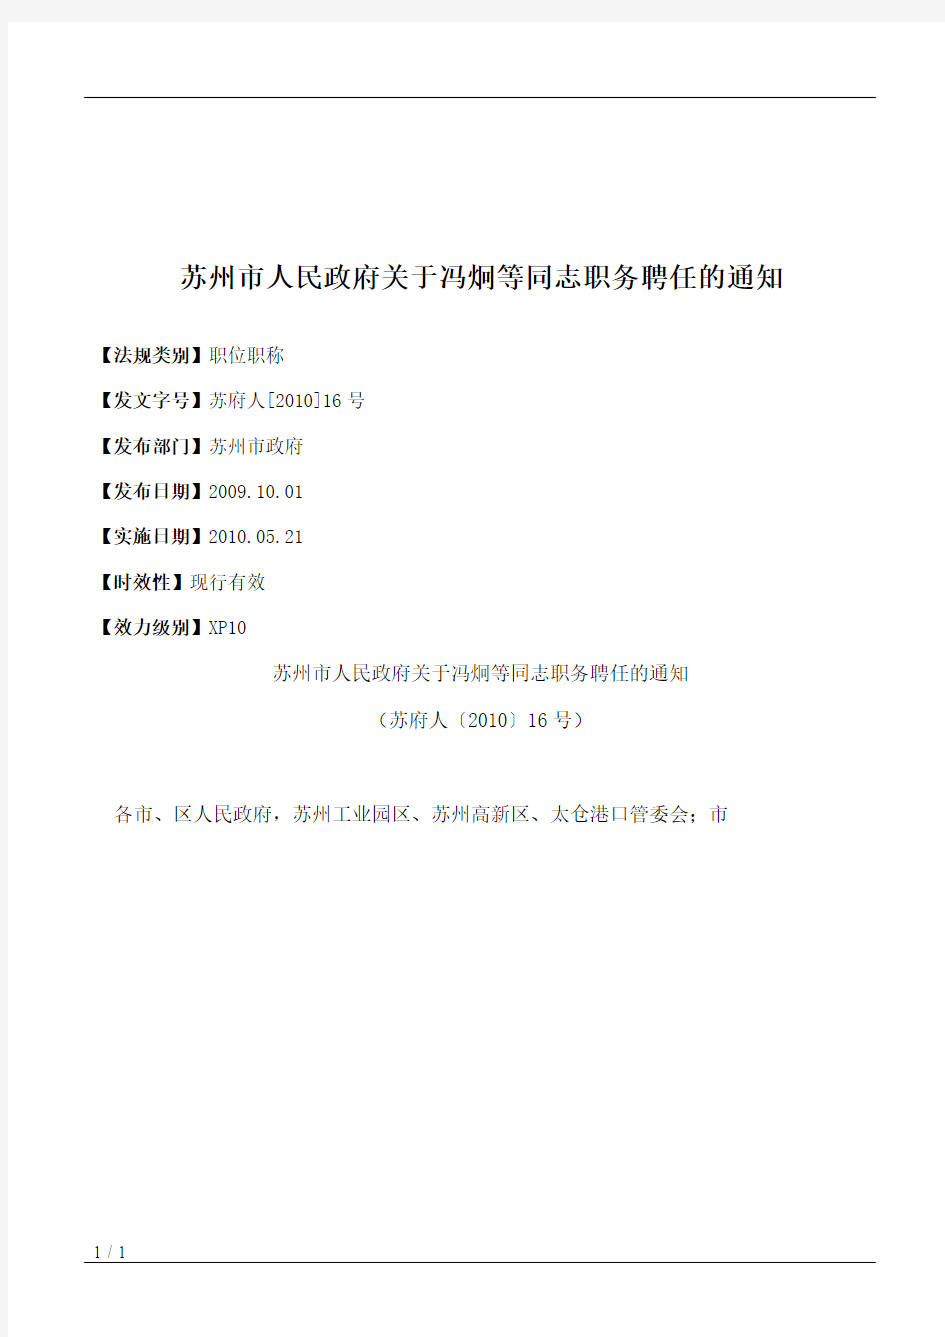 苏州市人民政府关于冯炯等同志职务聘任的通知